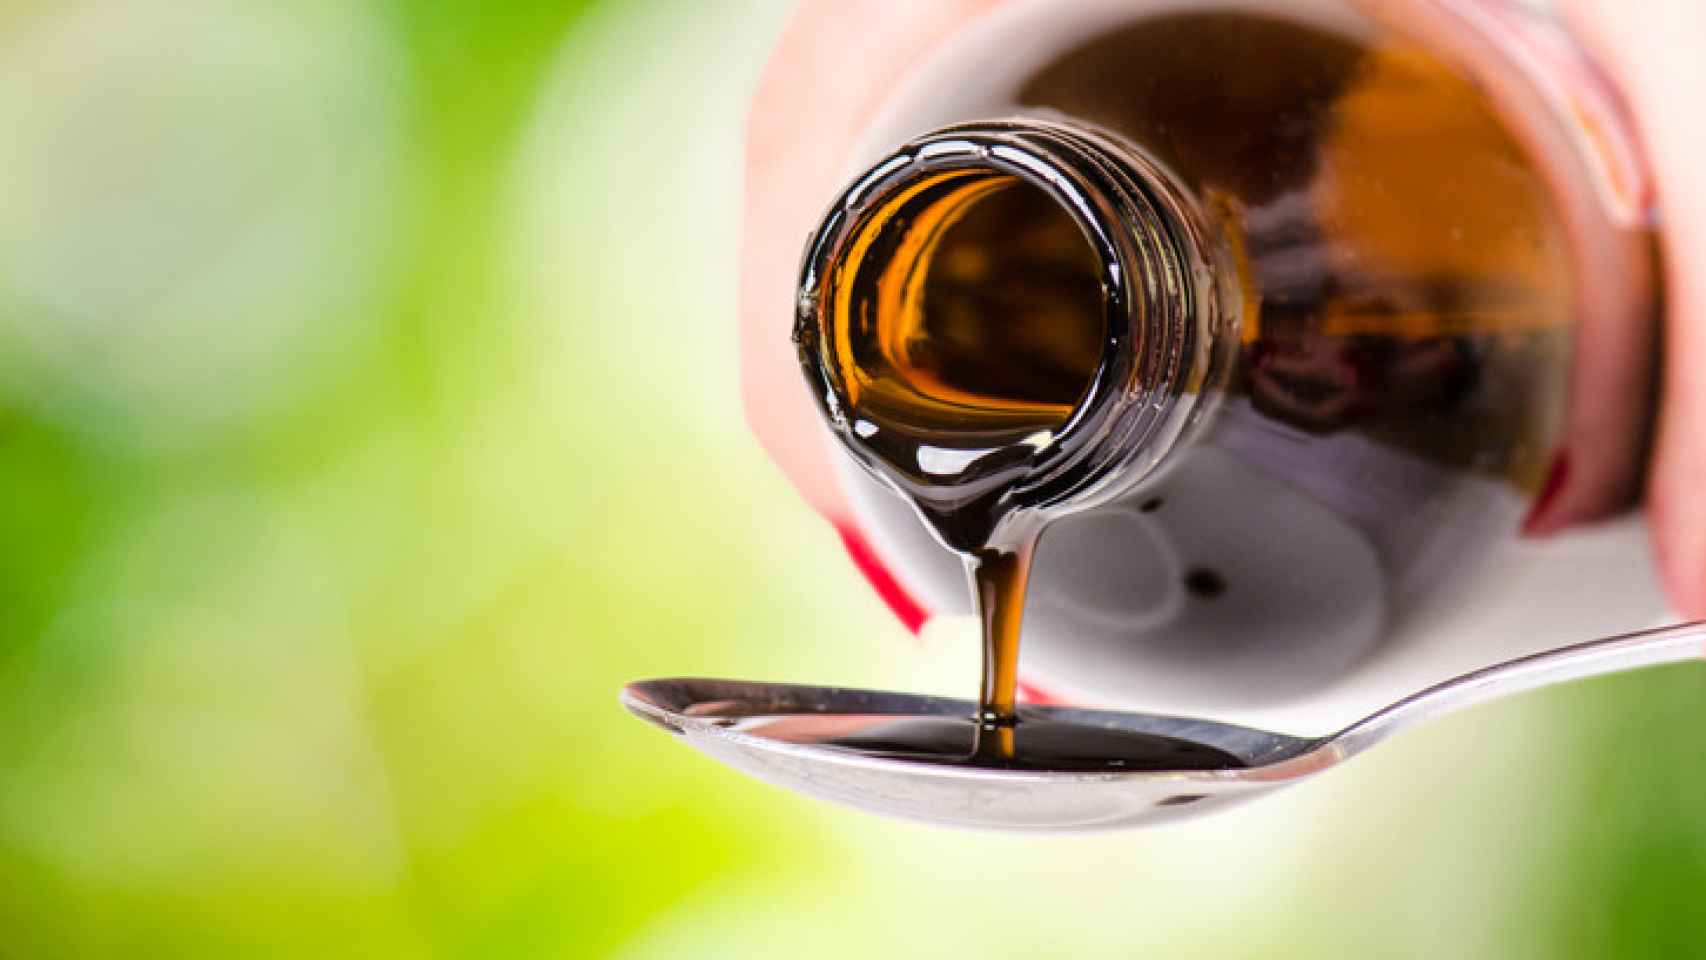 15 remedios naturales para aliviar la tos de tus hijos sin tener